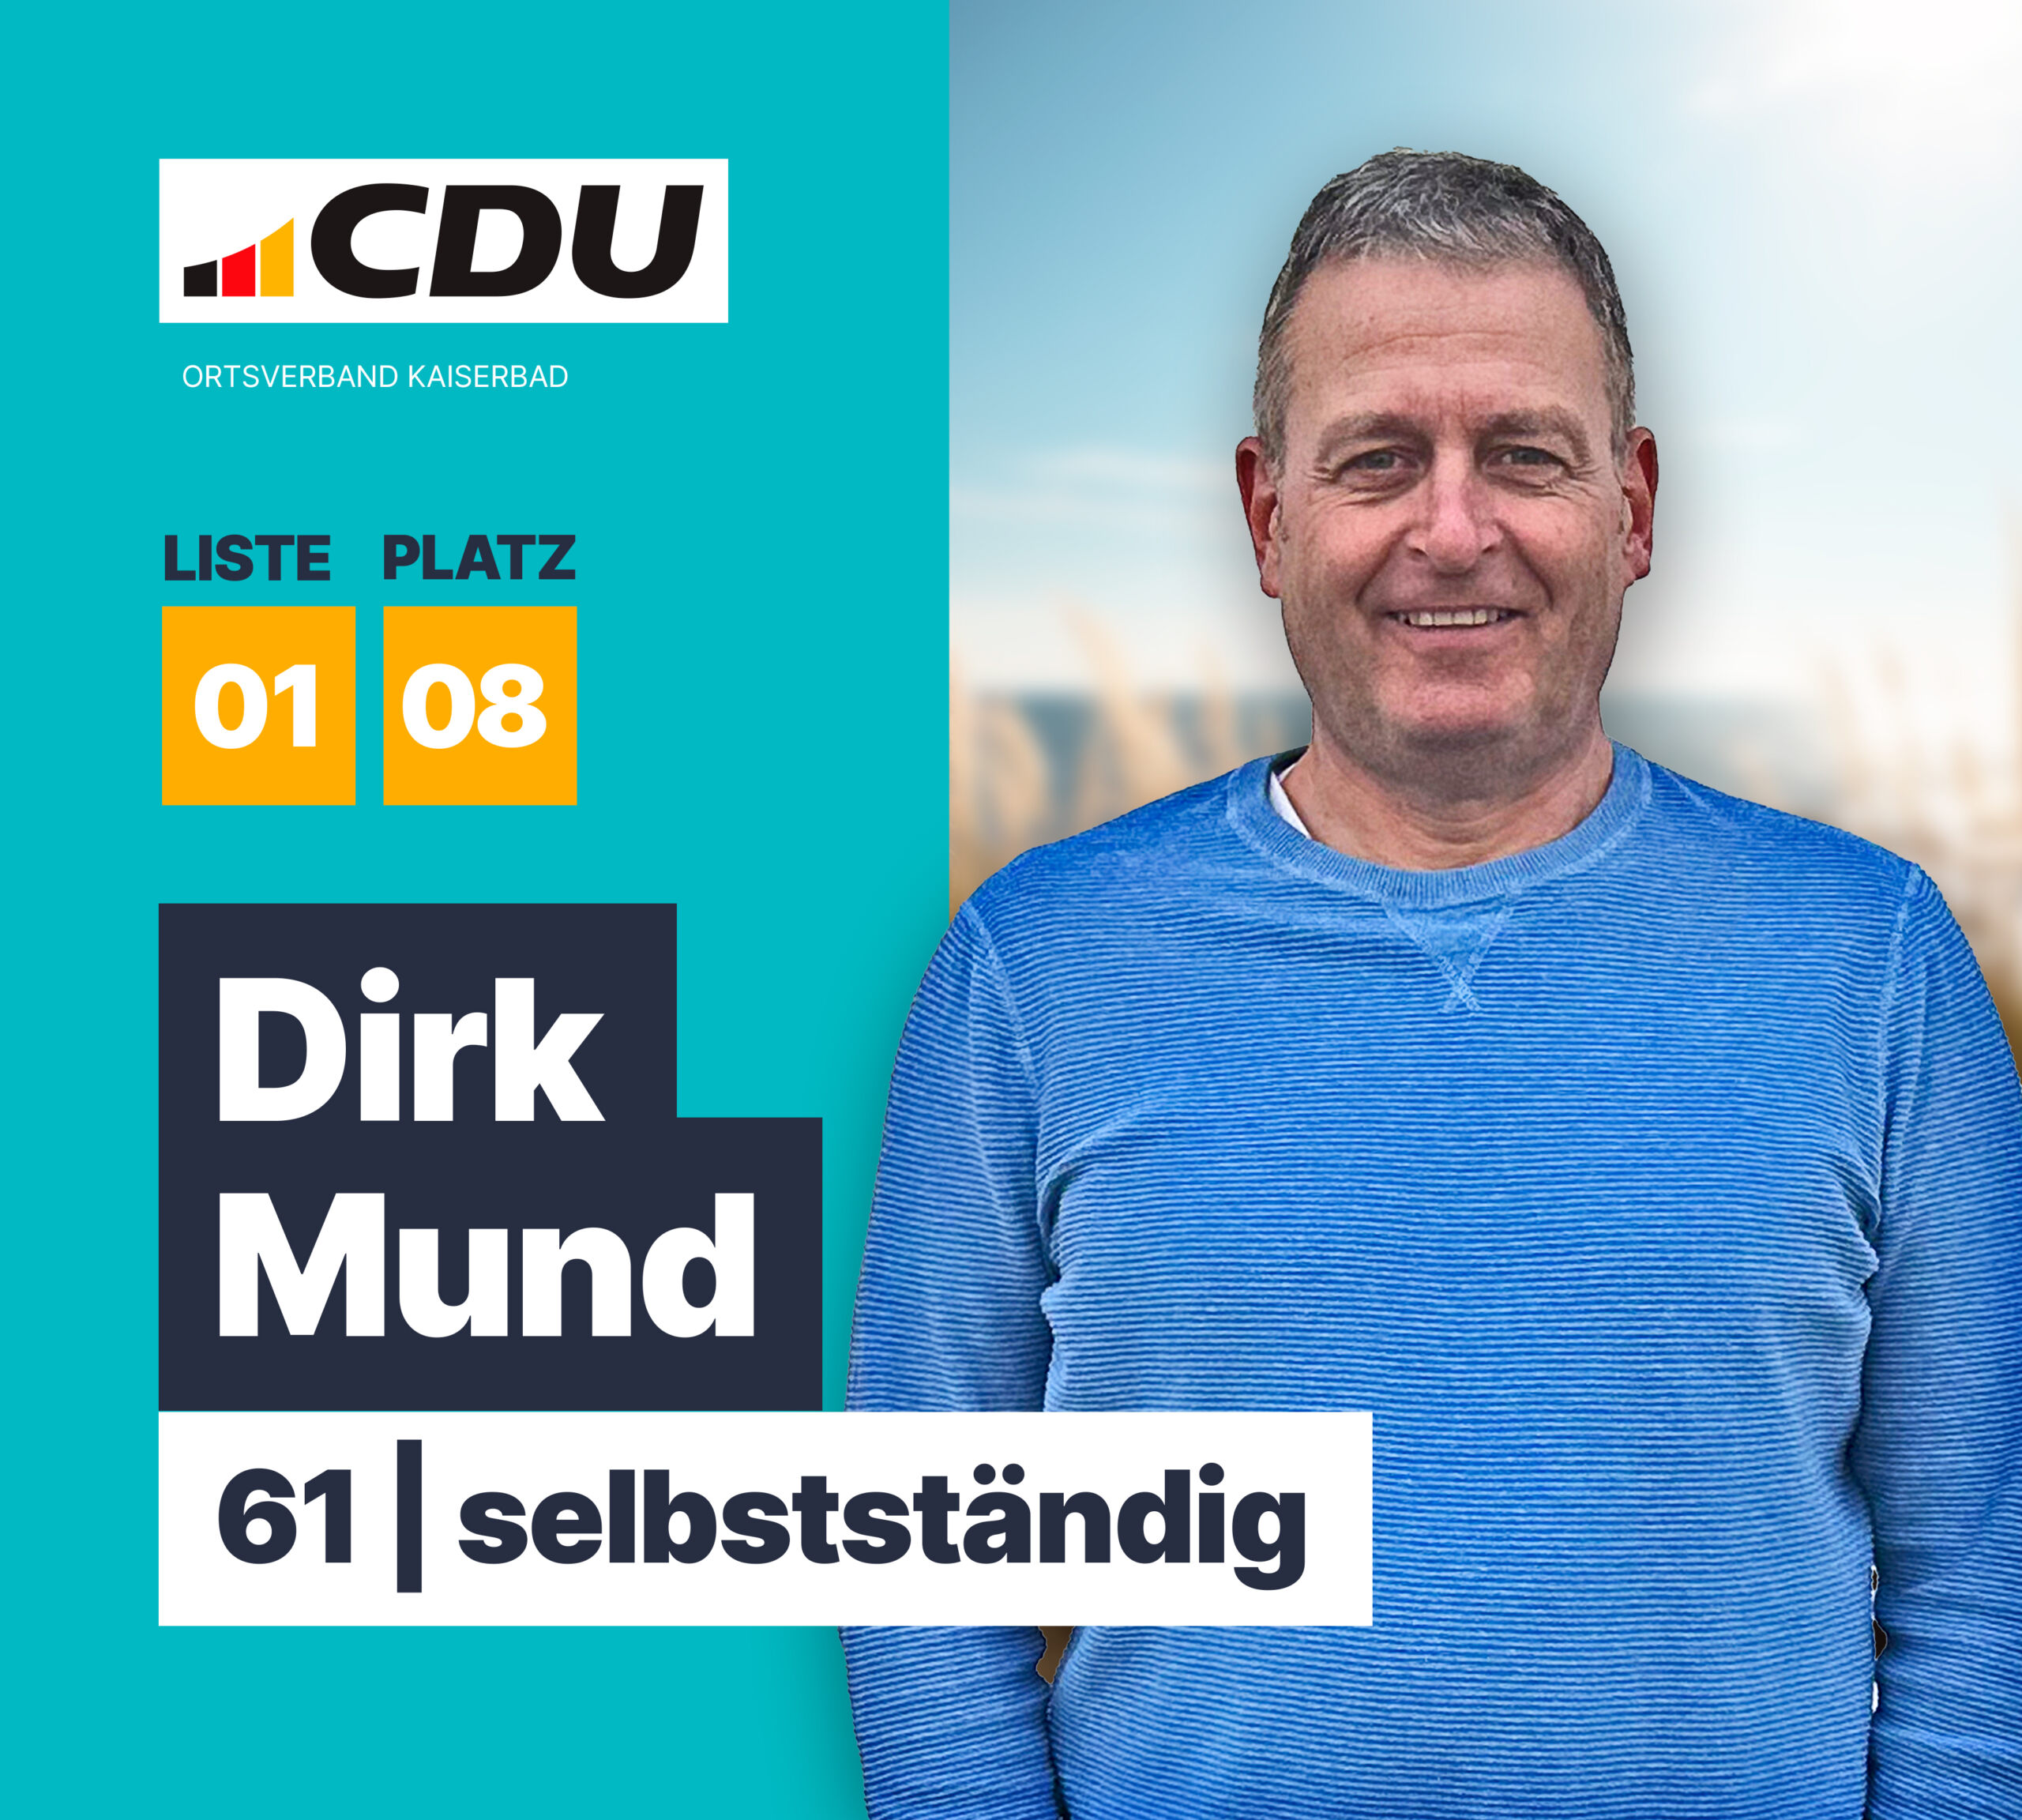 Dirk Mund